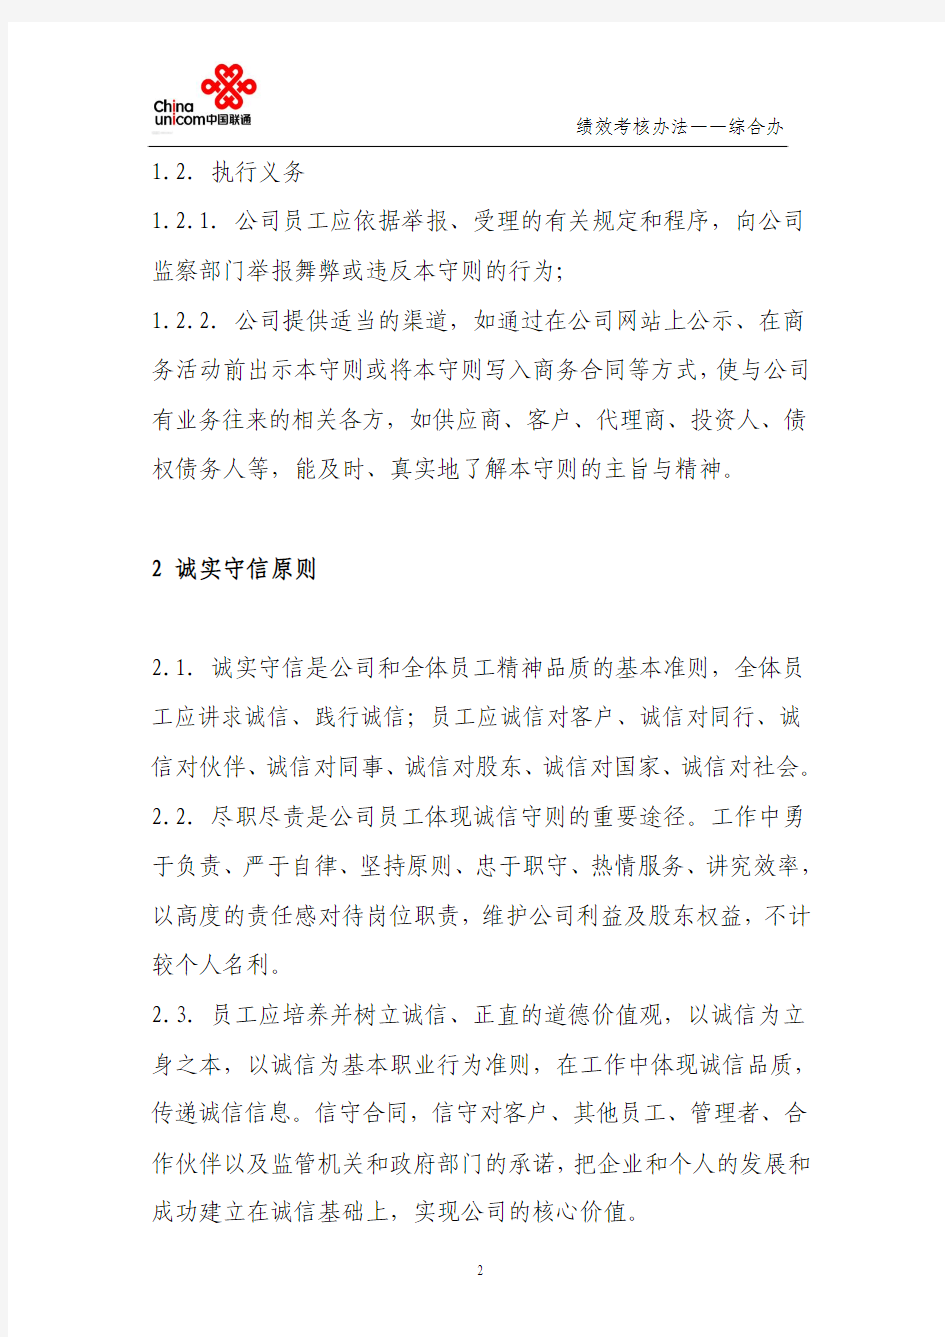 中国联通股份有限公司员工职业道德